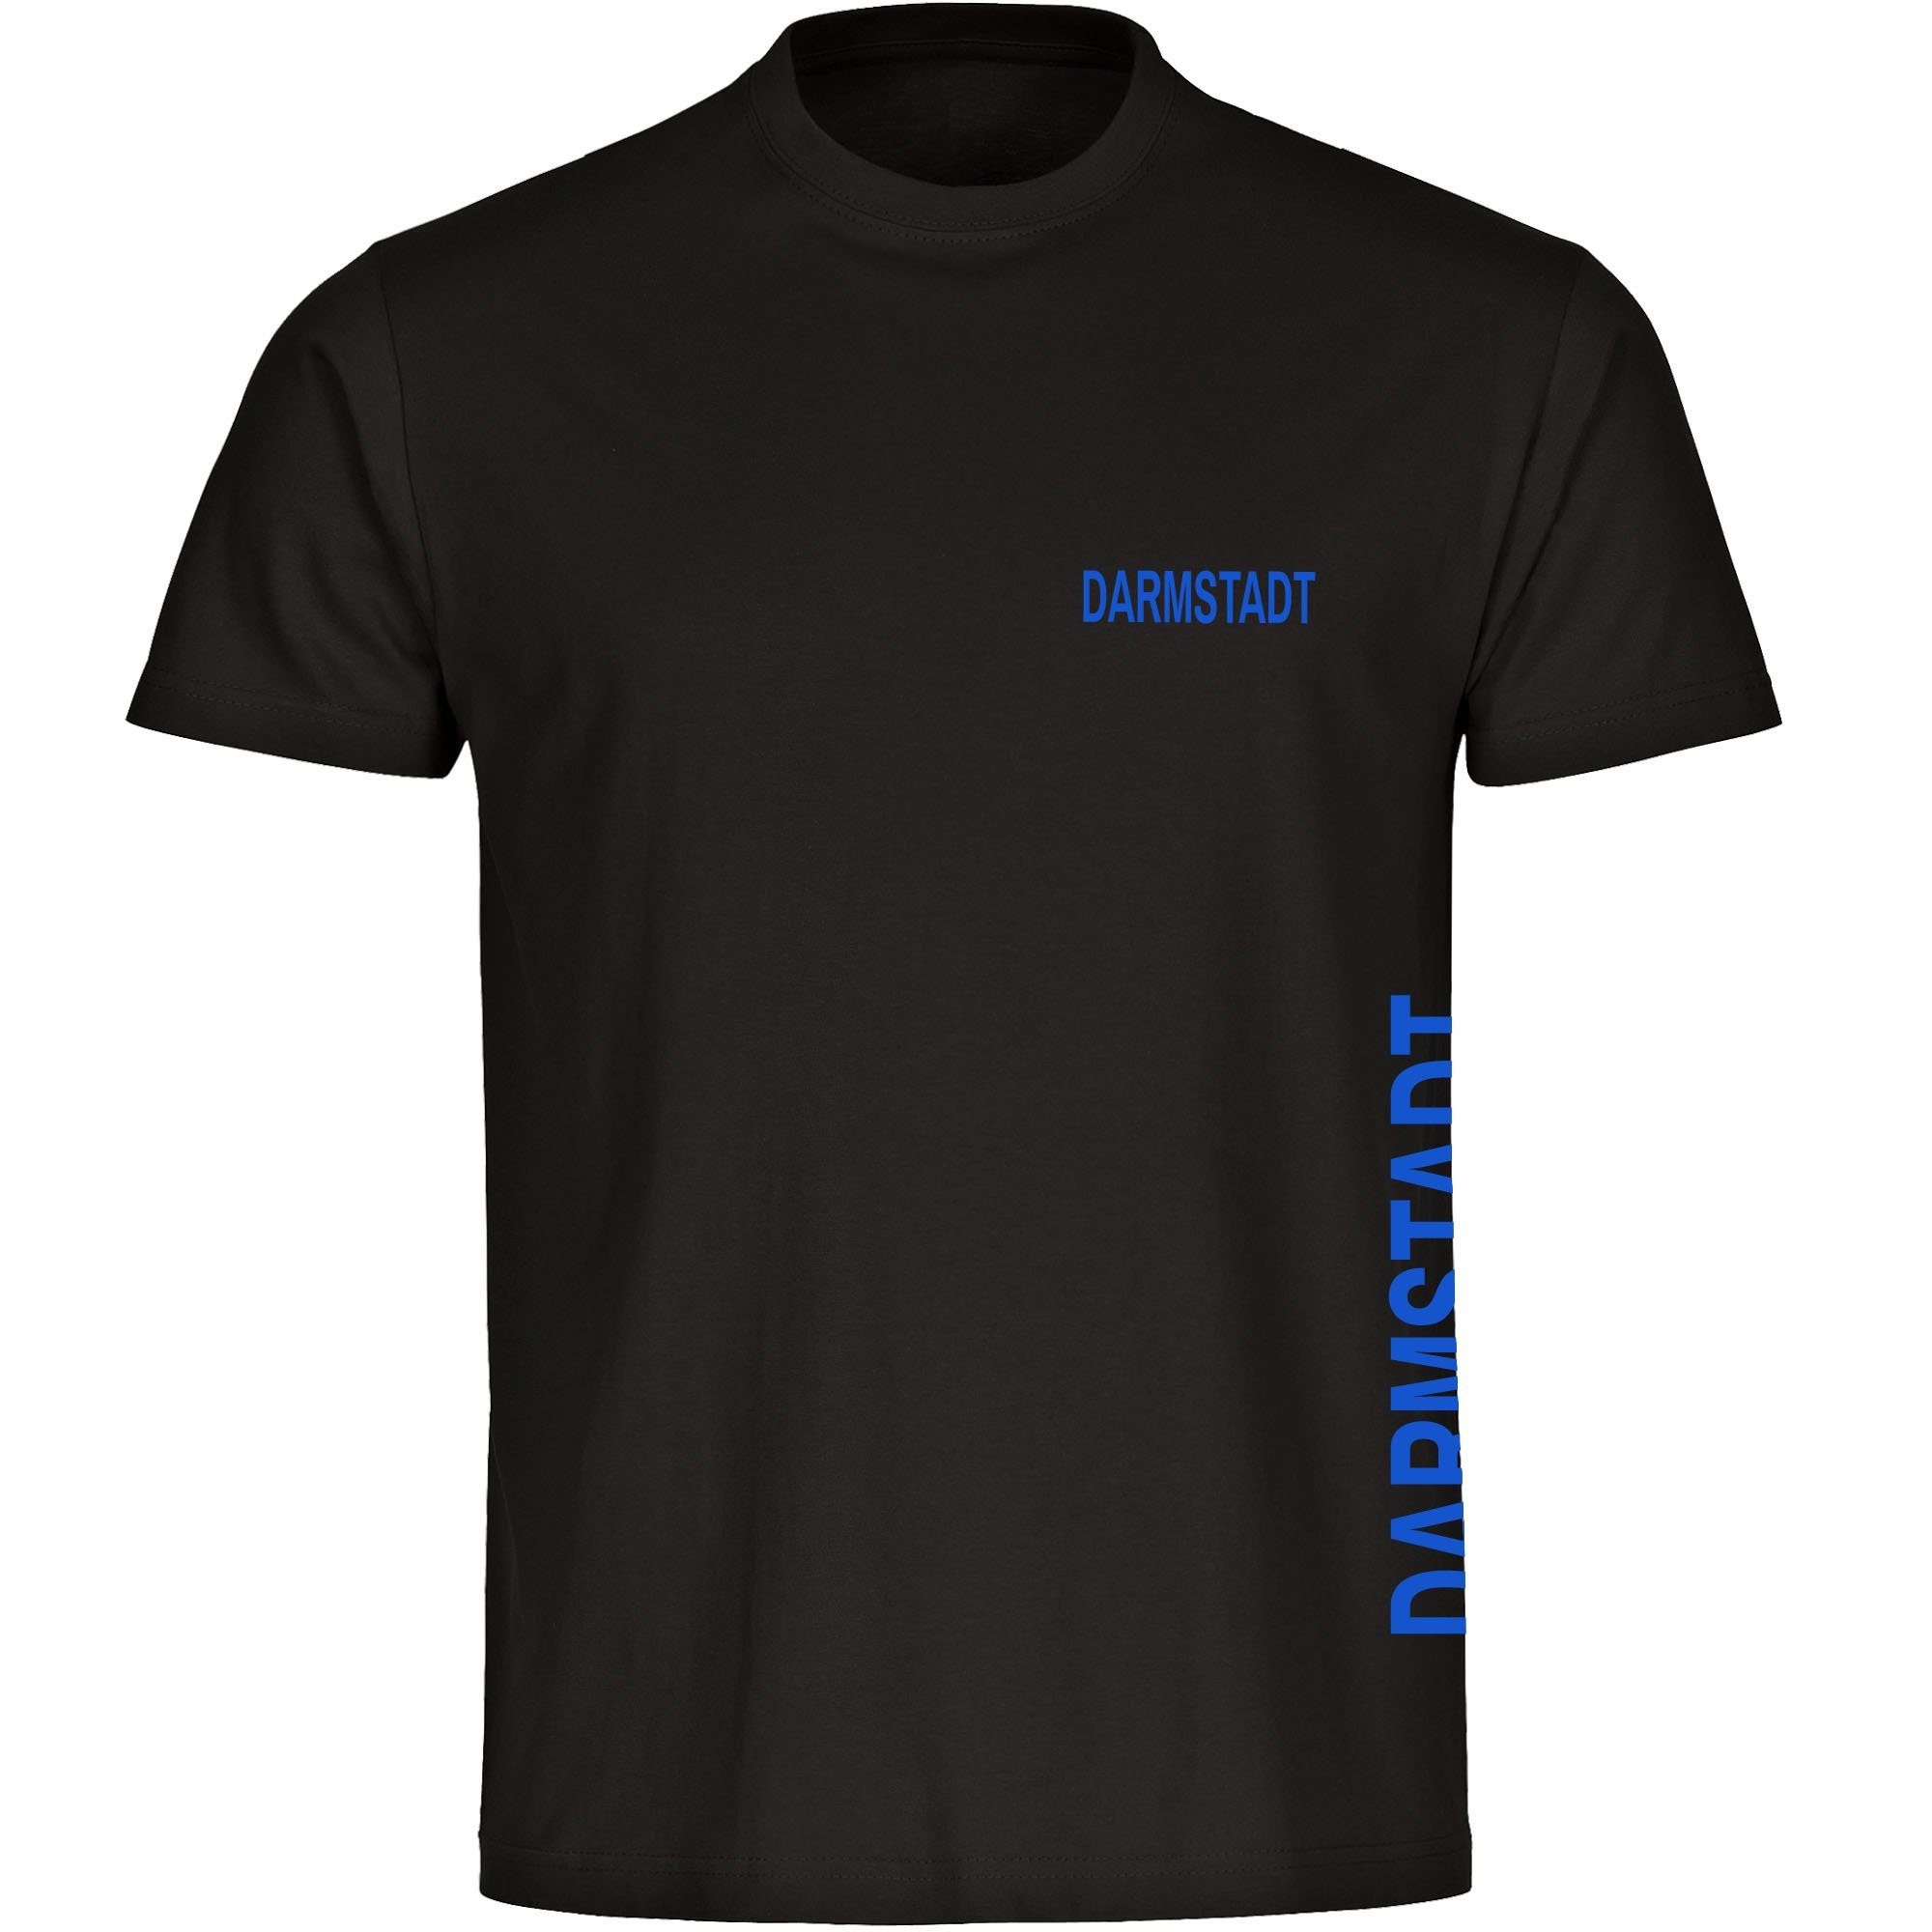 multifanshop T-Shirt Herren Darmstadt - Brust & Seite - Männer